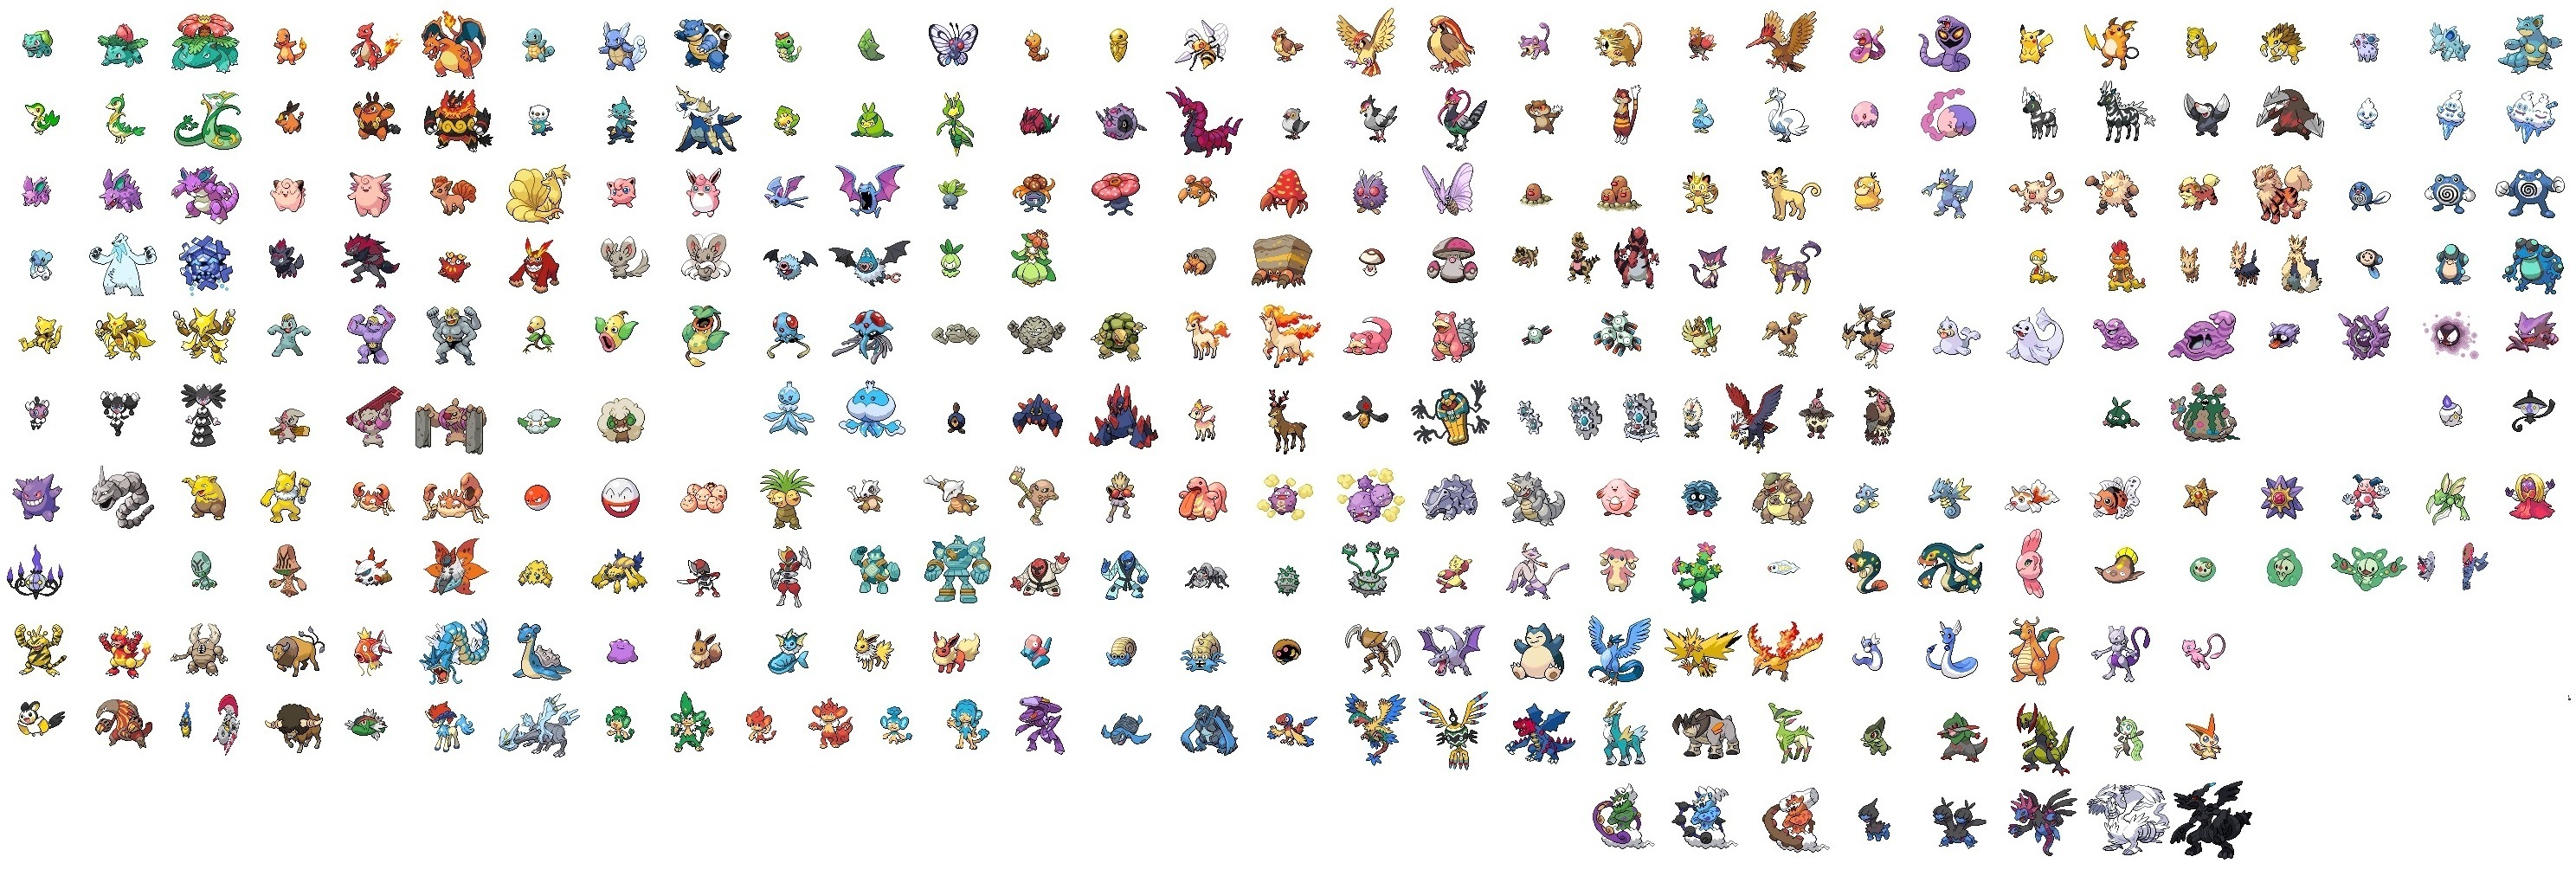 Unova Pokedex  All 156 Gen 5 Unova Pokemon 